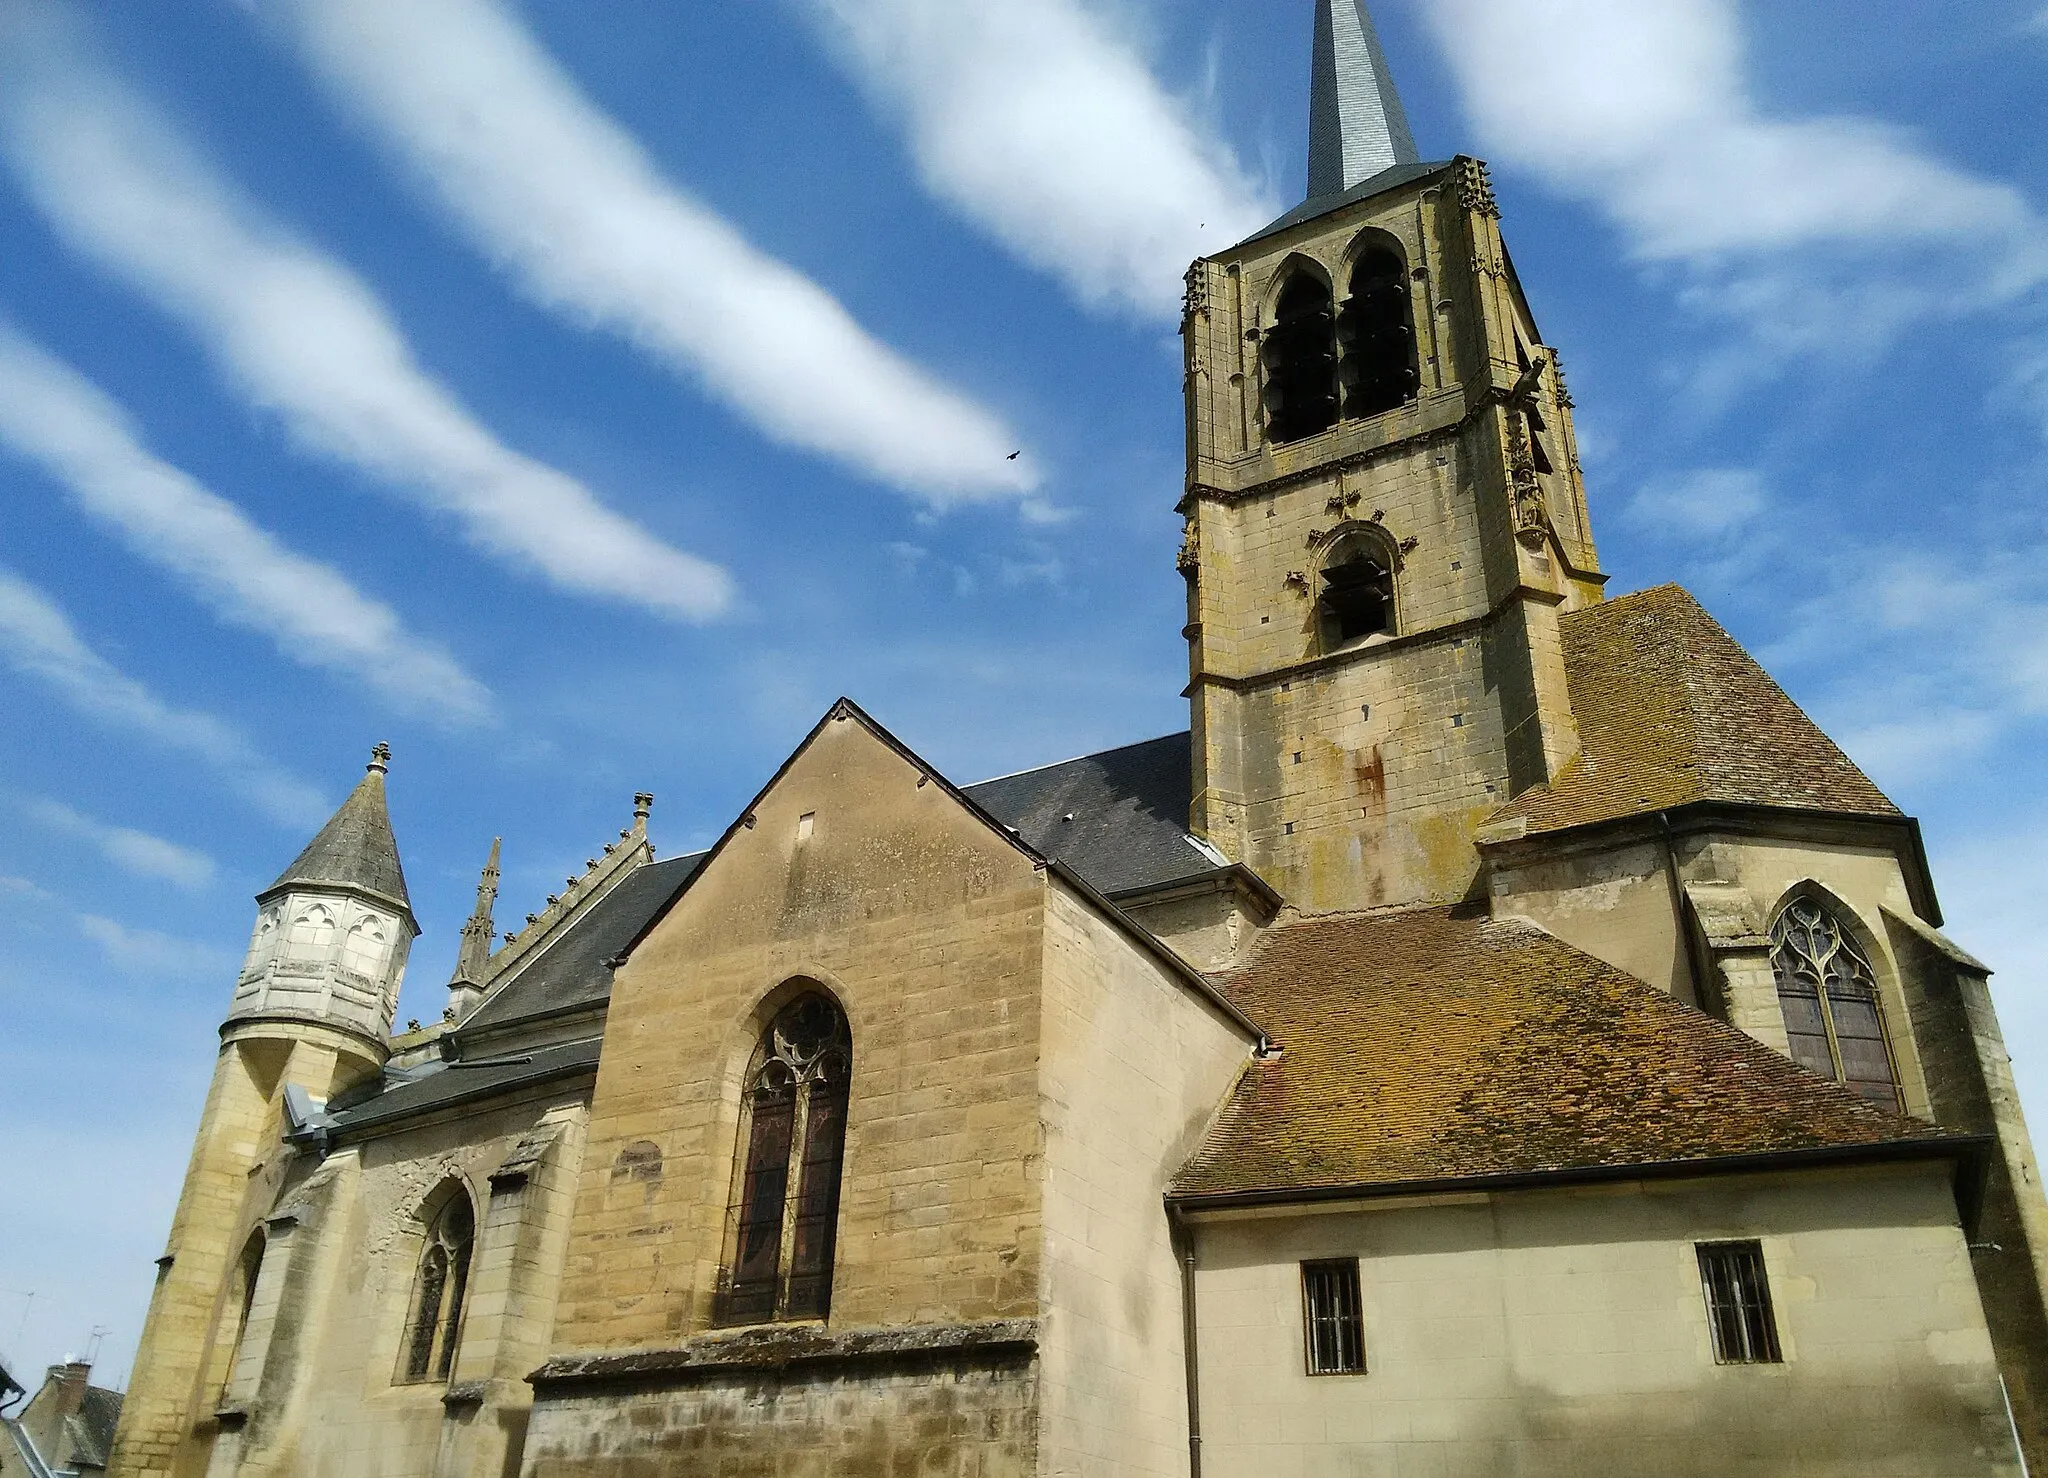 Photo showing: Vue d'un des côtés de l'église prise depuis la rue Salonyer, avec le chevet, le clocher, le transept et une des tours de la façade. Le ciel est strié de nuages qui semblent parallèles.